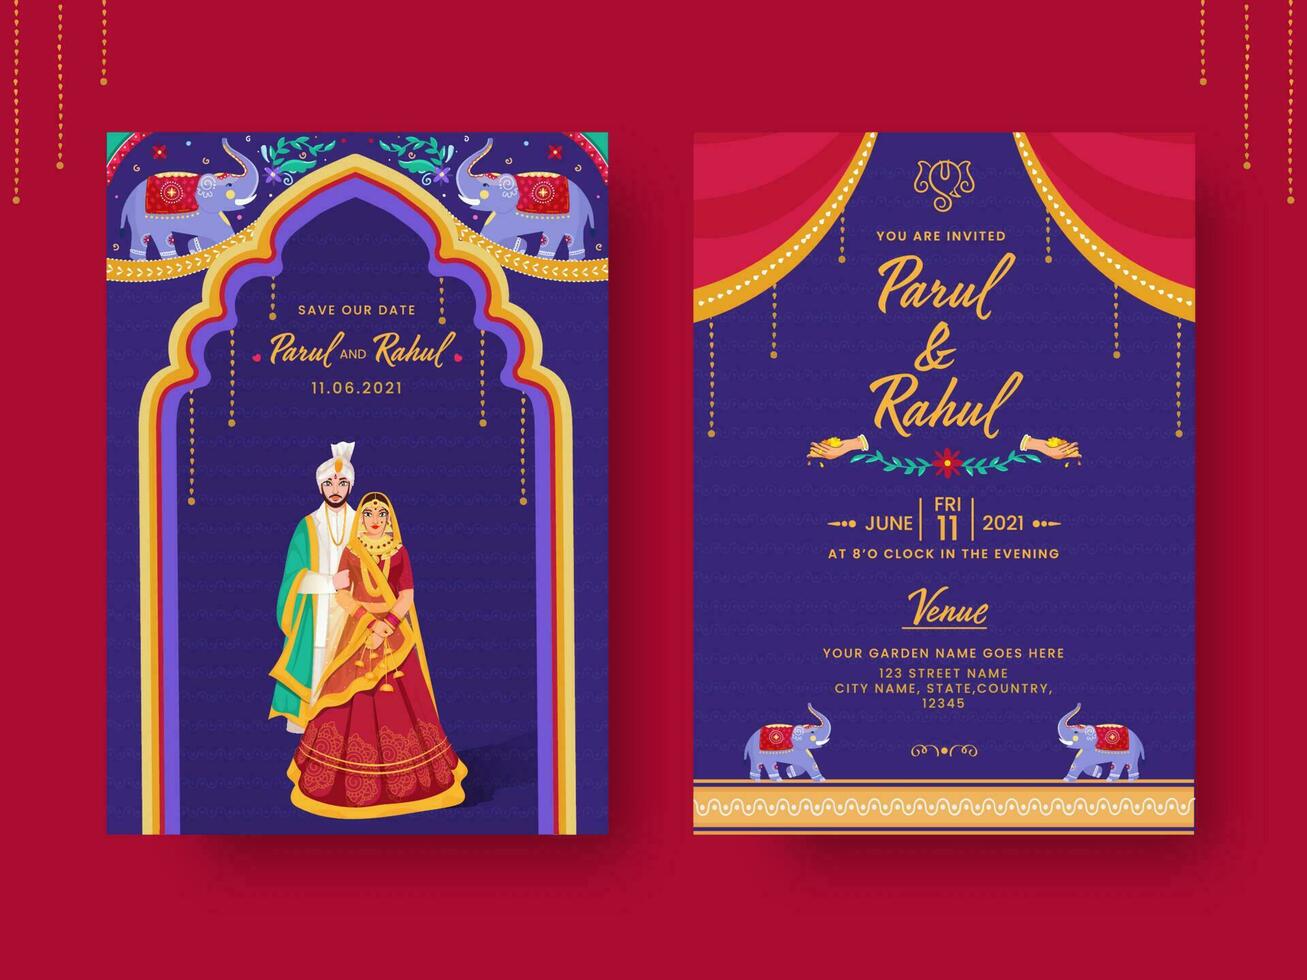 Indië kitsch stijl bruiloft uitnodiging kaart met evenement details in voorkant en terug visie. vector